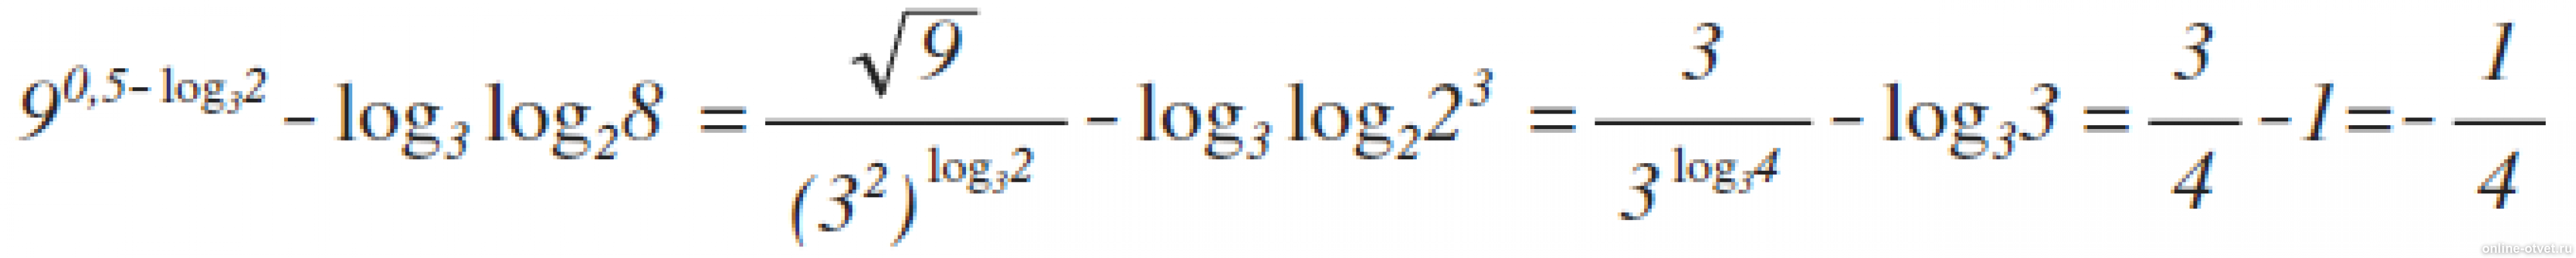 Log3 8 log 3 2. 9 В степени 0.5 log 3 2 log3. Лог x по основанию корень из 3. Log 25 по основанию корень из 2. Log2 log2 корень 4 степени из 2.